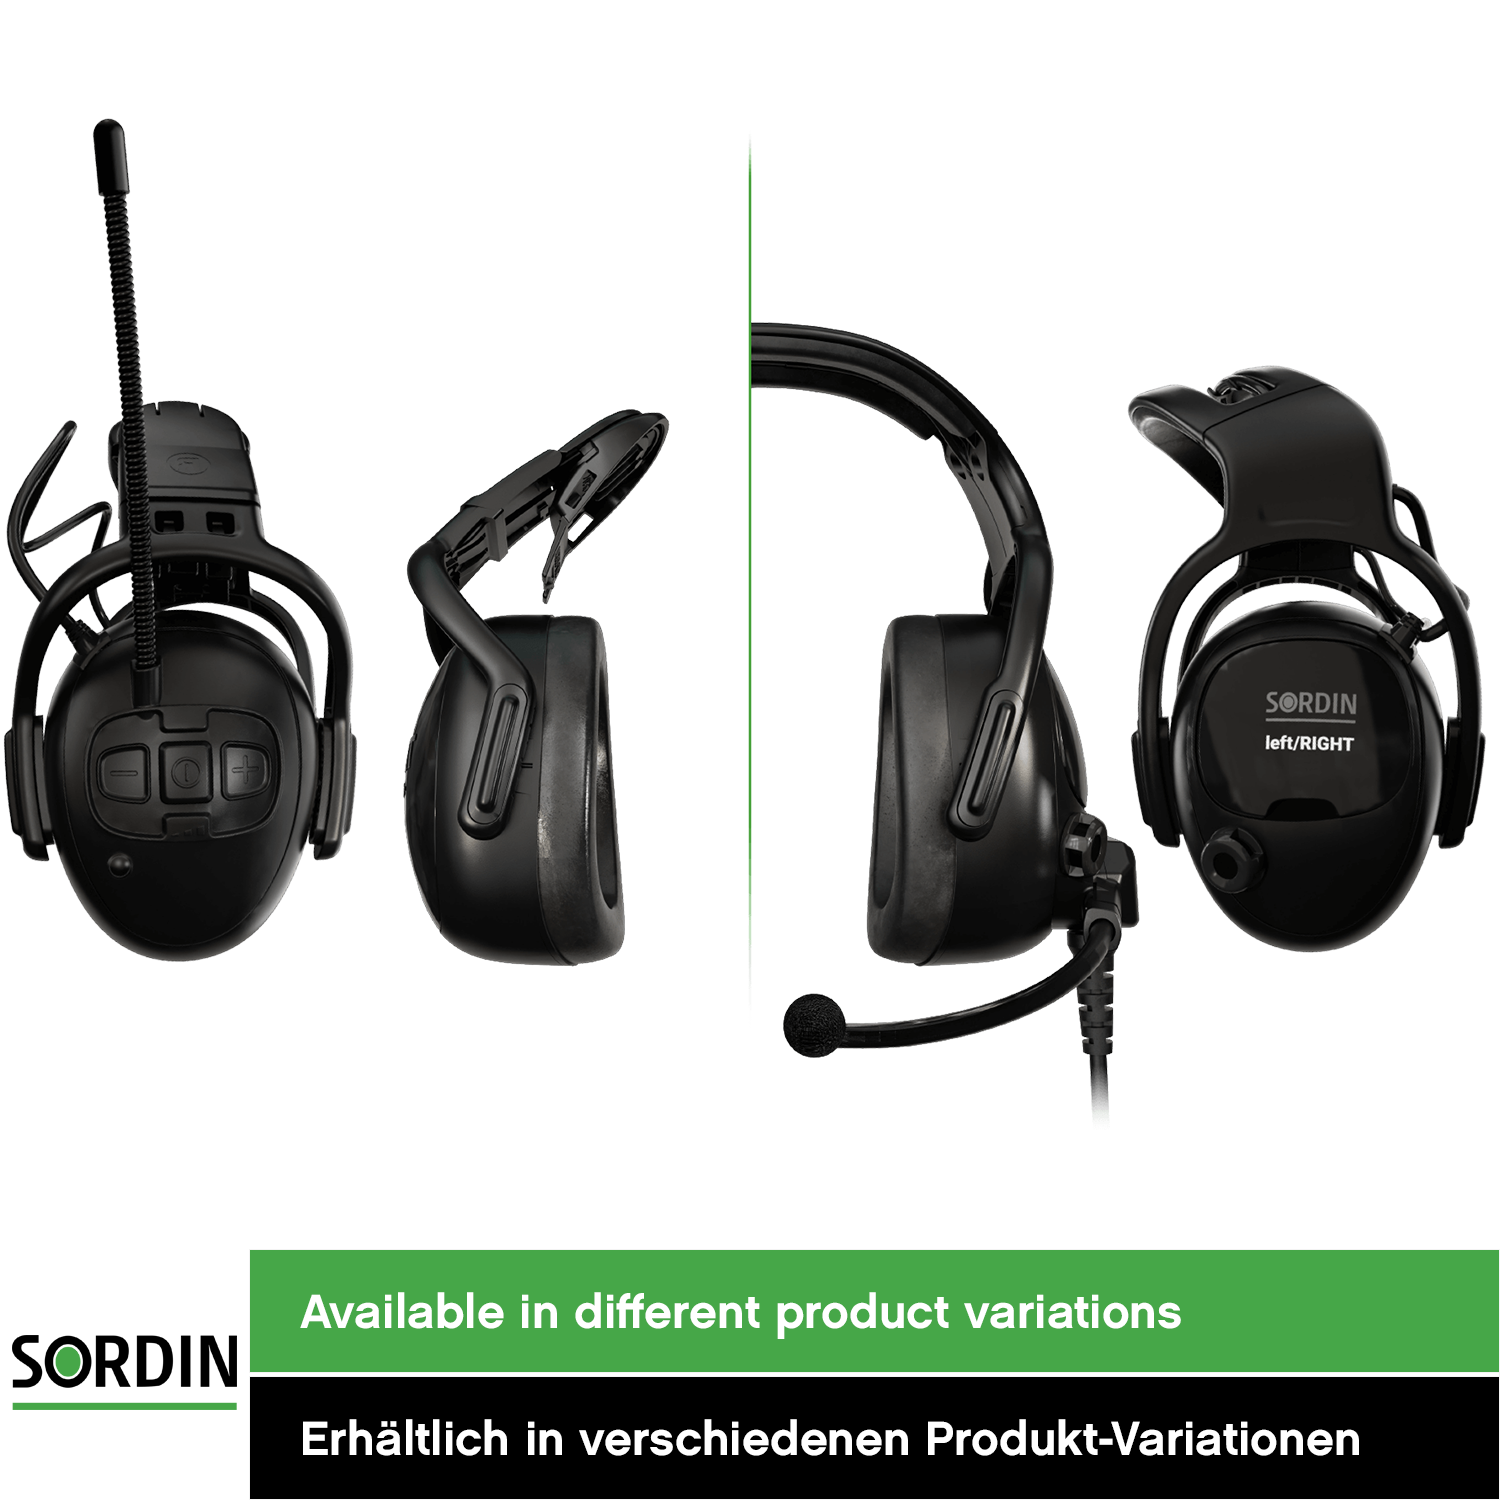 Sordin left/RIGHT CO Pro Kapsel-Gehörschutz - aktiver Ohrenschützer - elektronischer Gehörschützer für die Arbeit